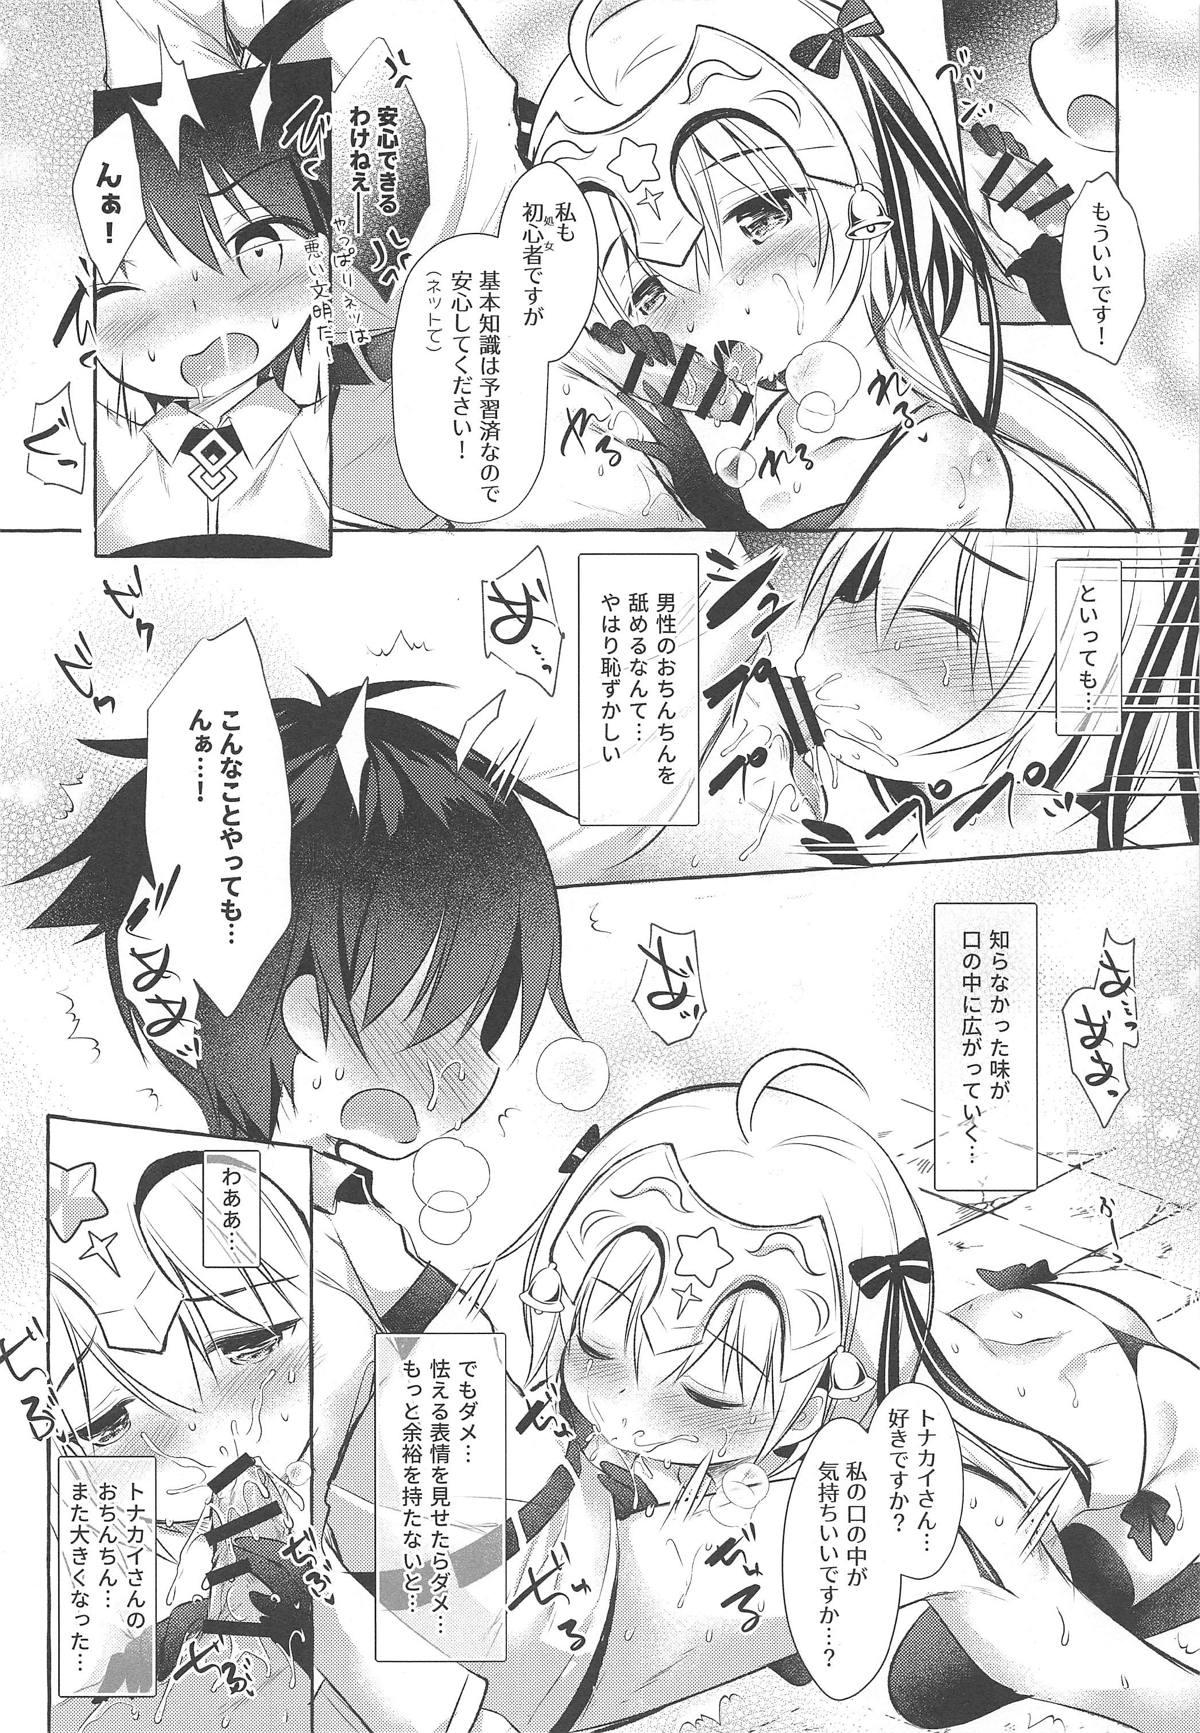 Gros Seins Tonakai-san no ○○ wa Watashi ga Mamoru! - Fate grand order Aunty - Page 11